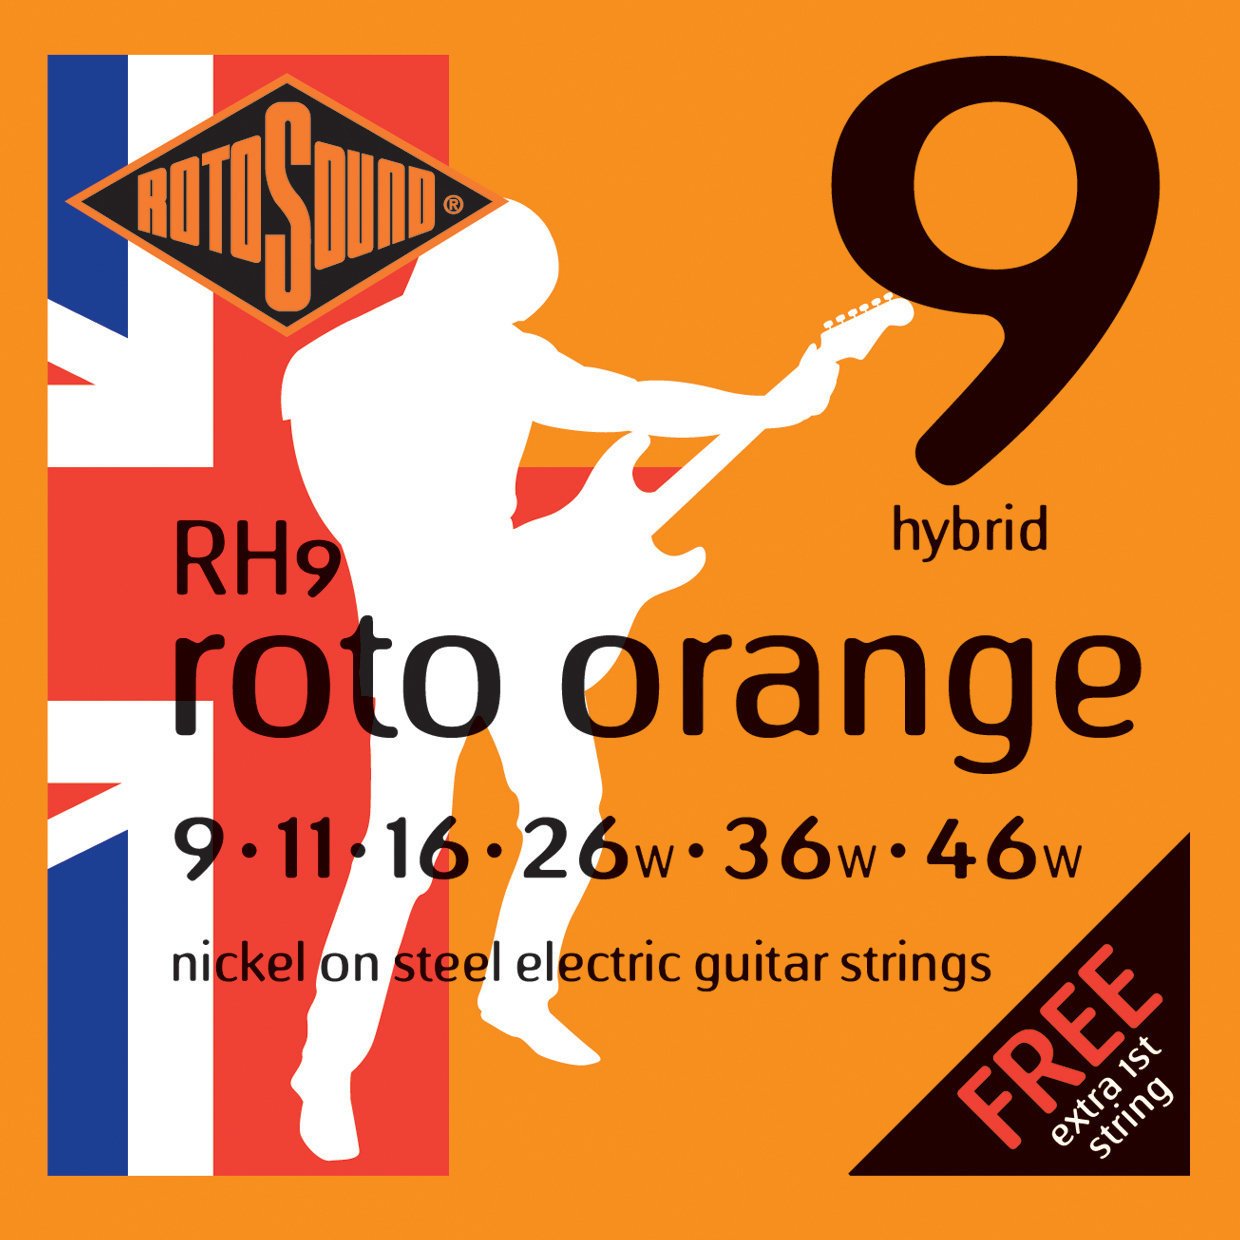 Struny pre elektrickú gitaru Rotosound RH9